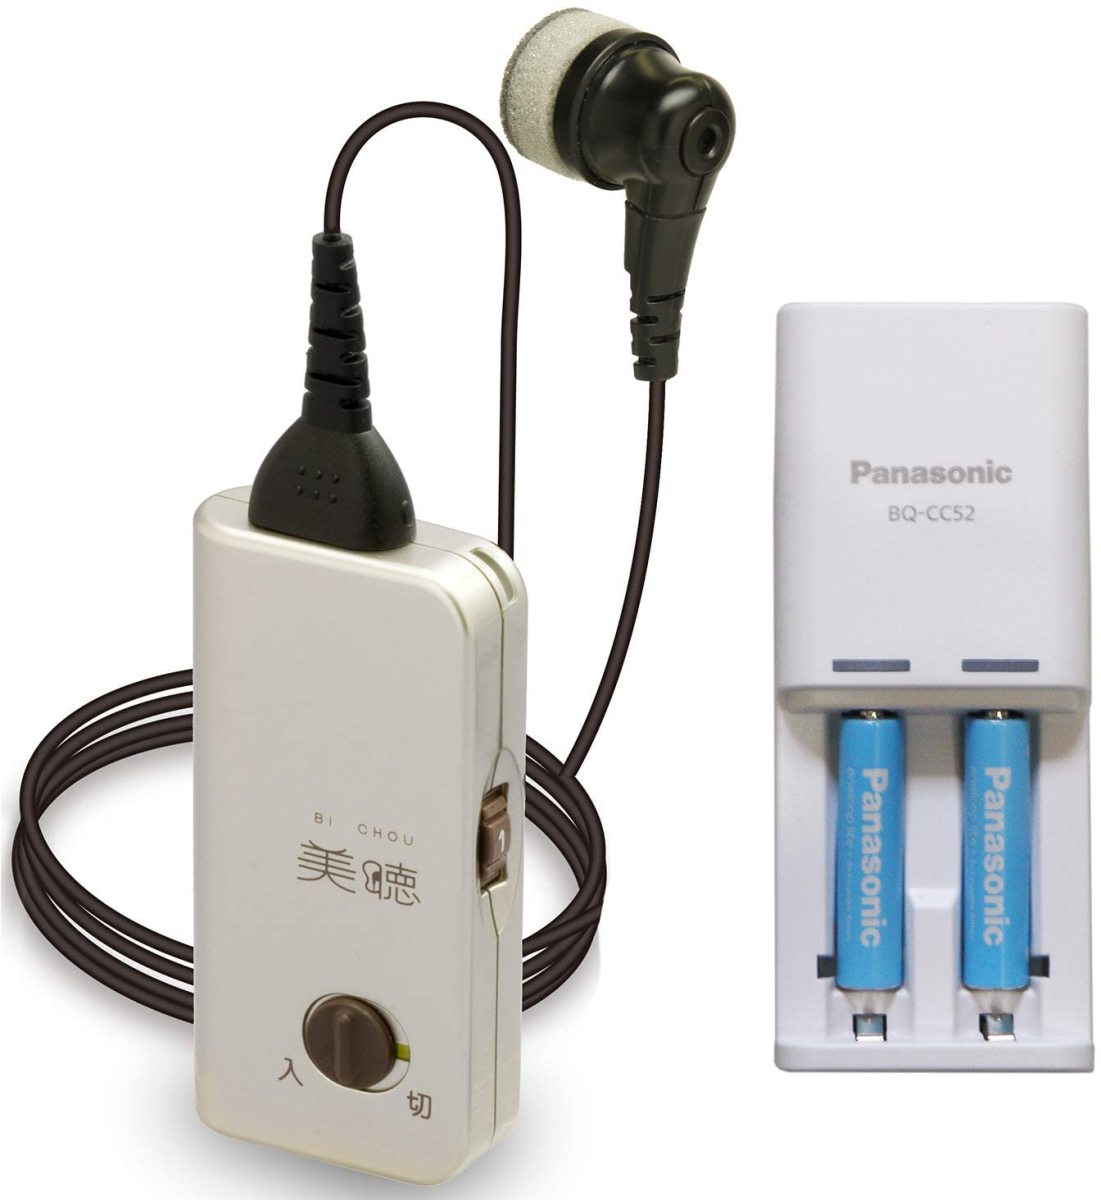 シナノケンシ ポケット型補聴器 美聴だんらん PH-200 補聴器本体の商品画像